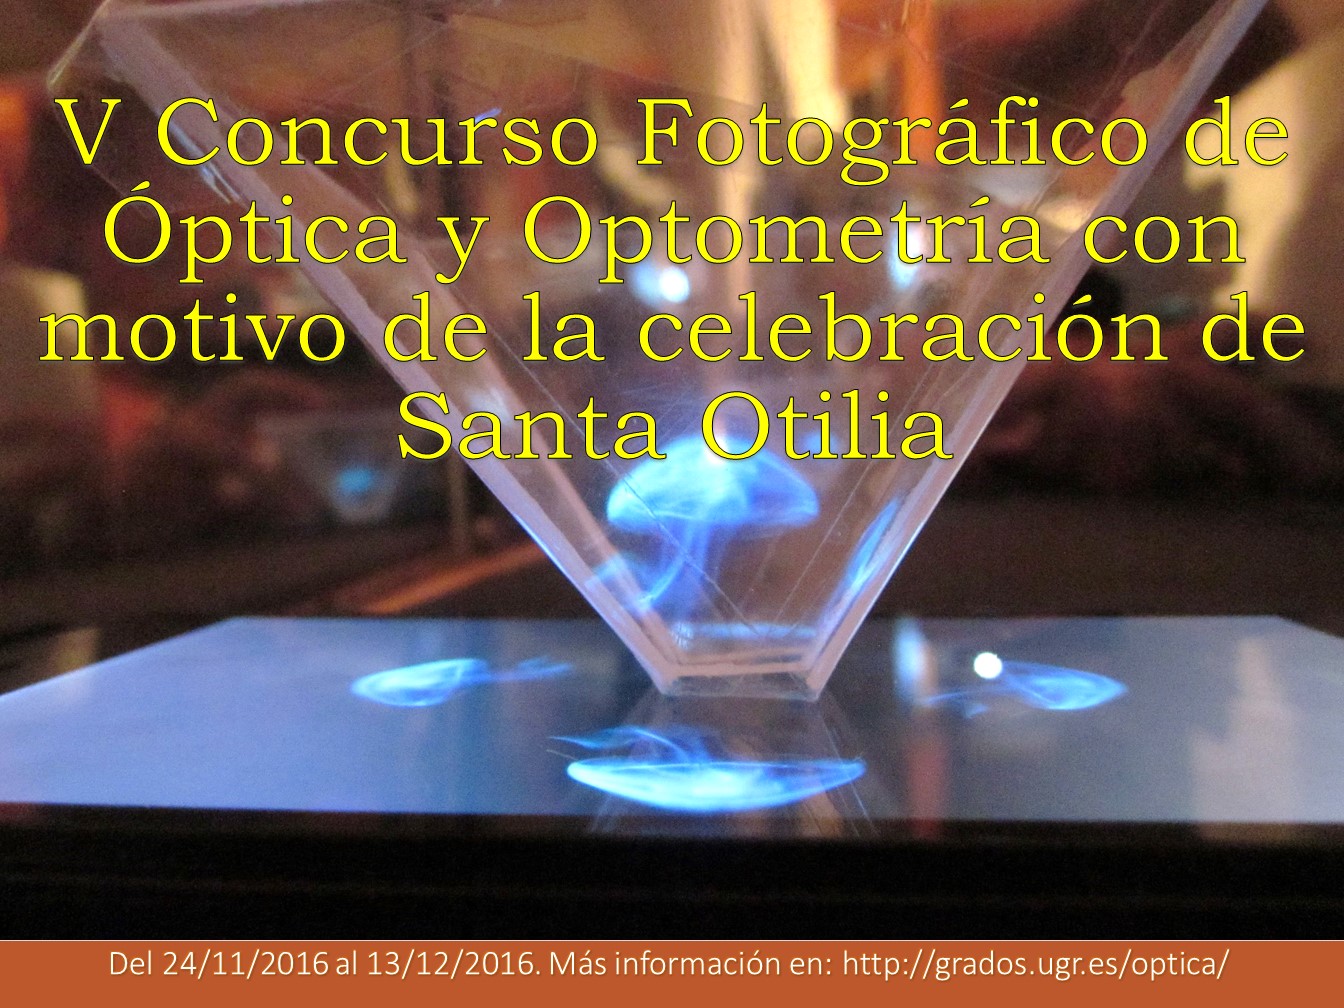 V concurso fotográfico de Óptica y Optometría con motivo de la celebración de Santa Otilia